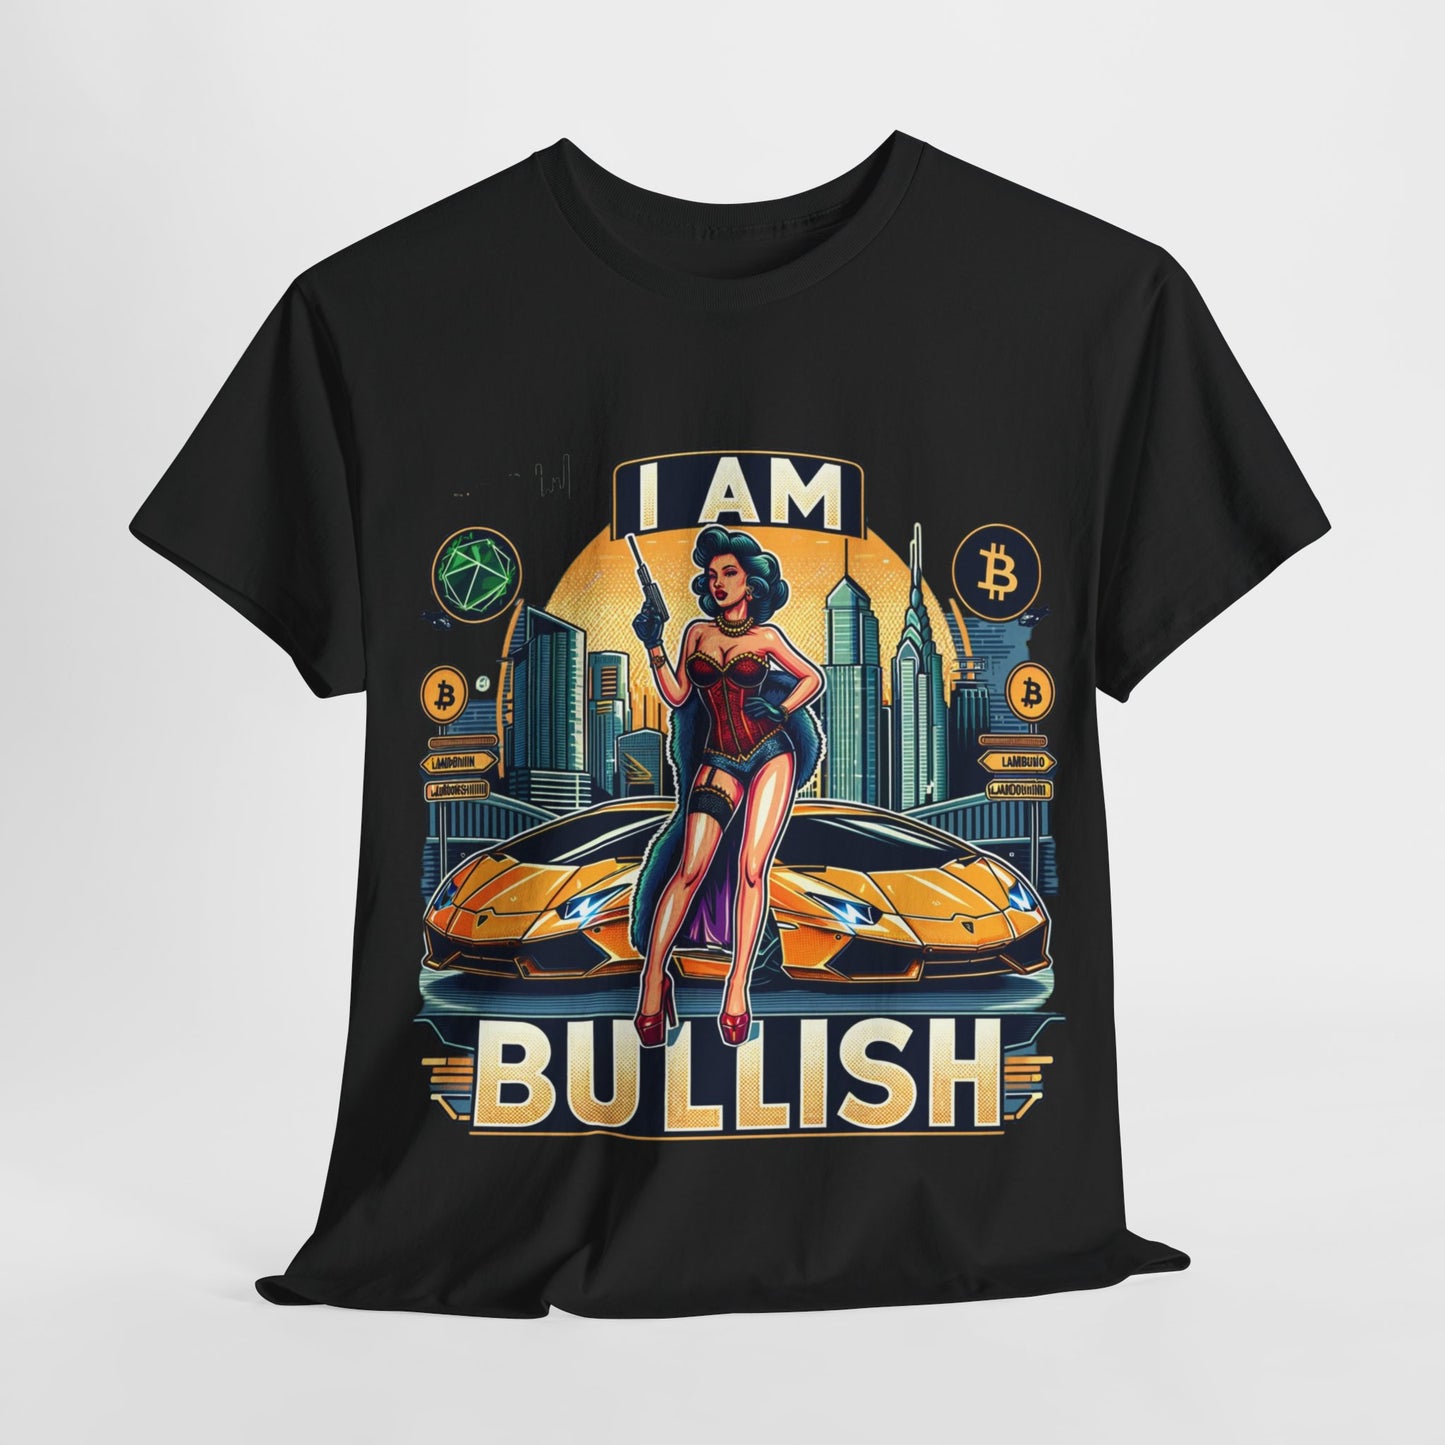 Y.M.L.Y. "I am Bullish" T-Shirt Crypto Currency T-Shirts Bitcoin Tee Lambo Tee Classic Tee Unisex